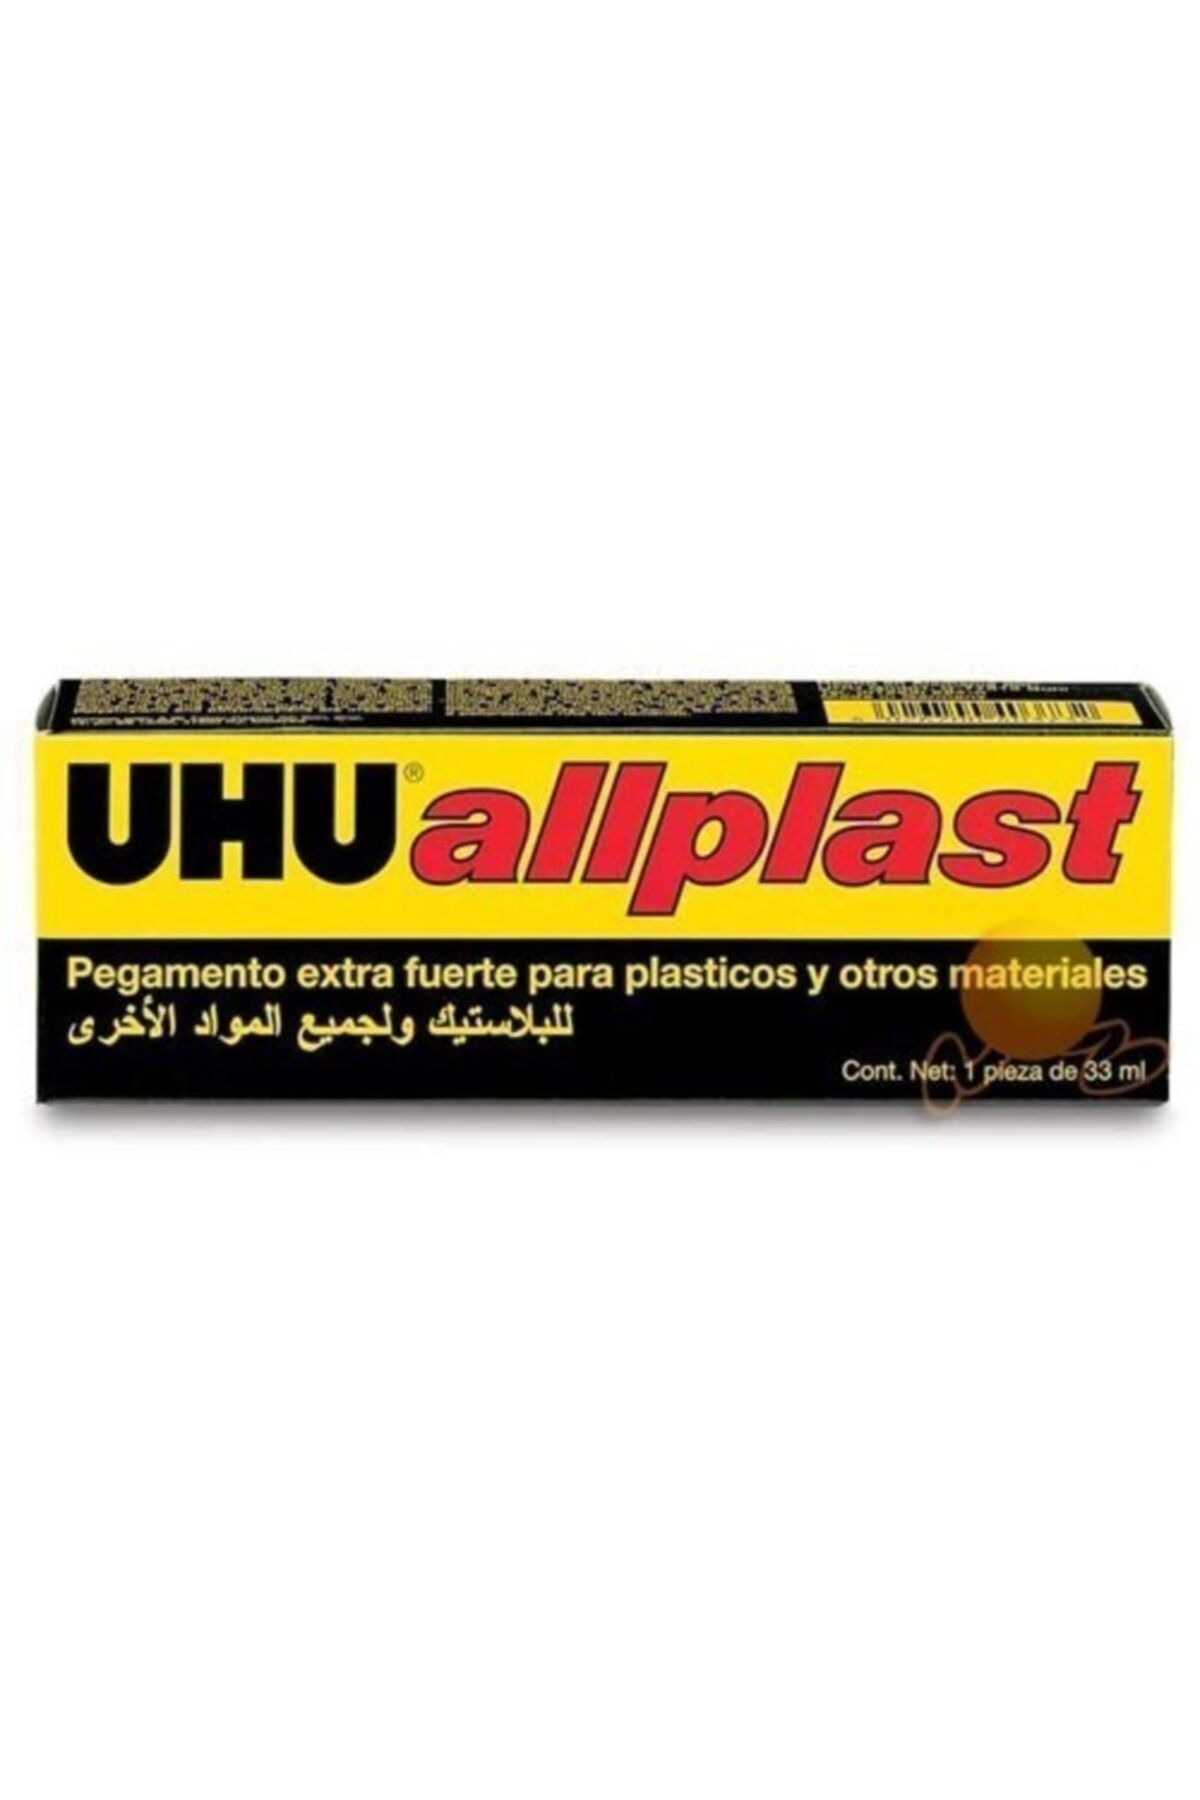 Uhu All Plast - Plastik Yapıstırıcısı